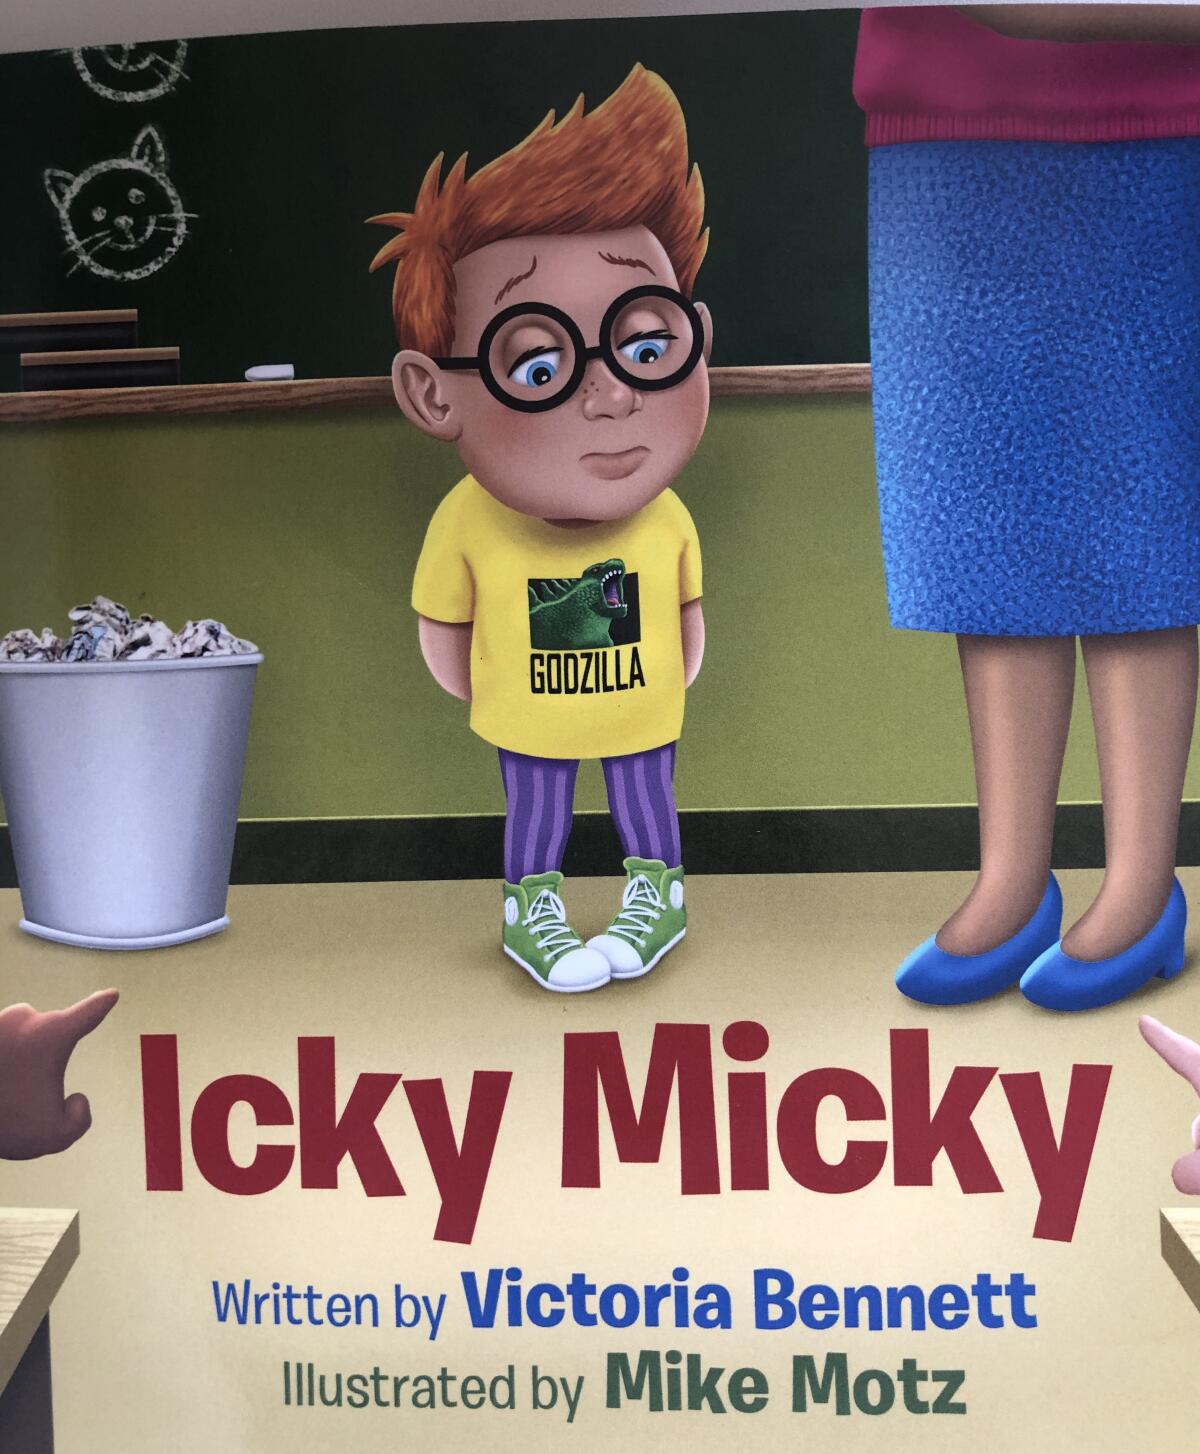 "Icky Micky" by Victoria Bennett.